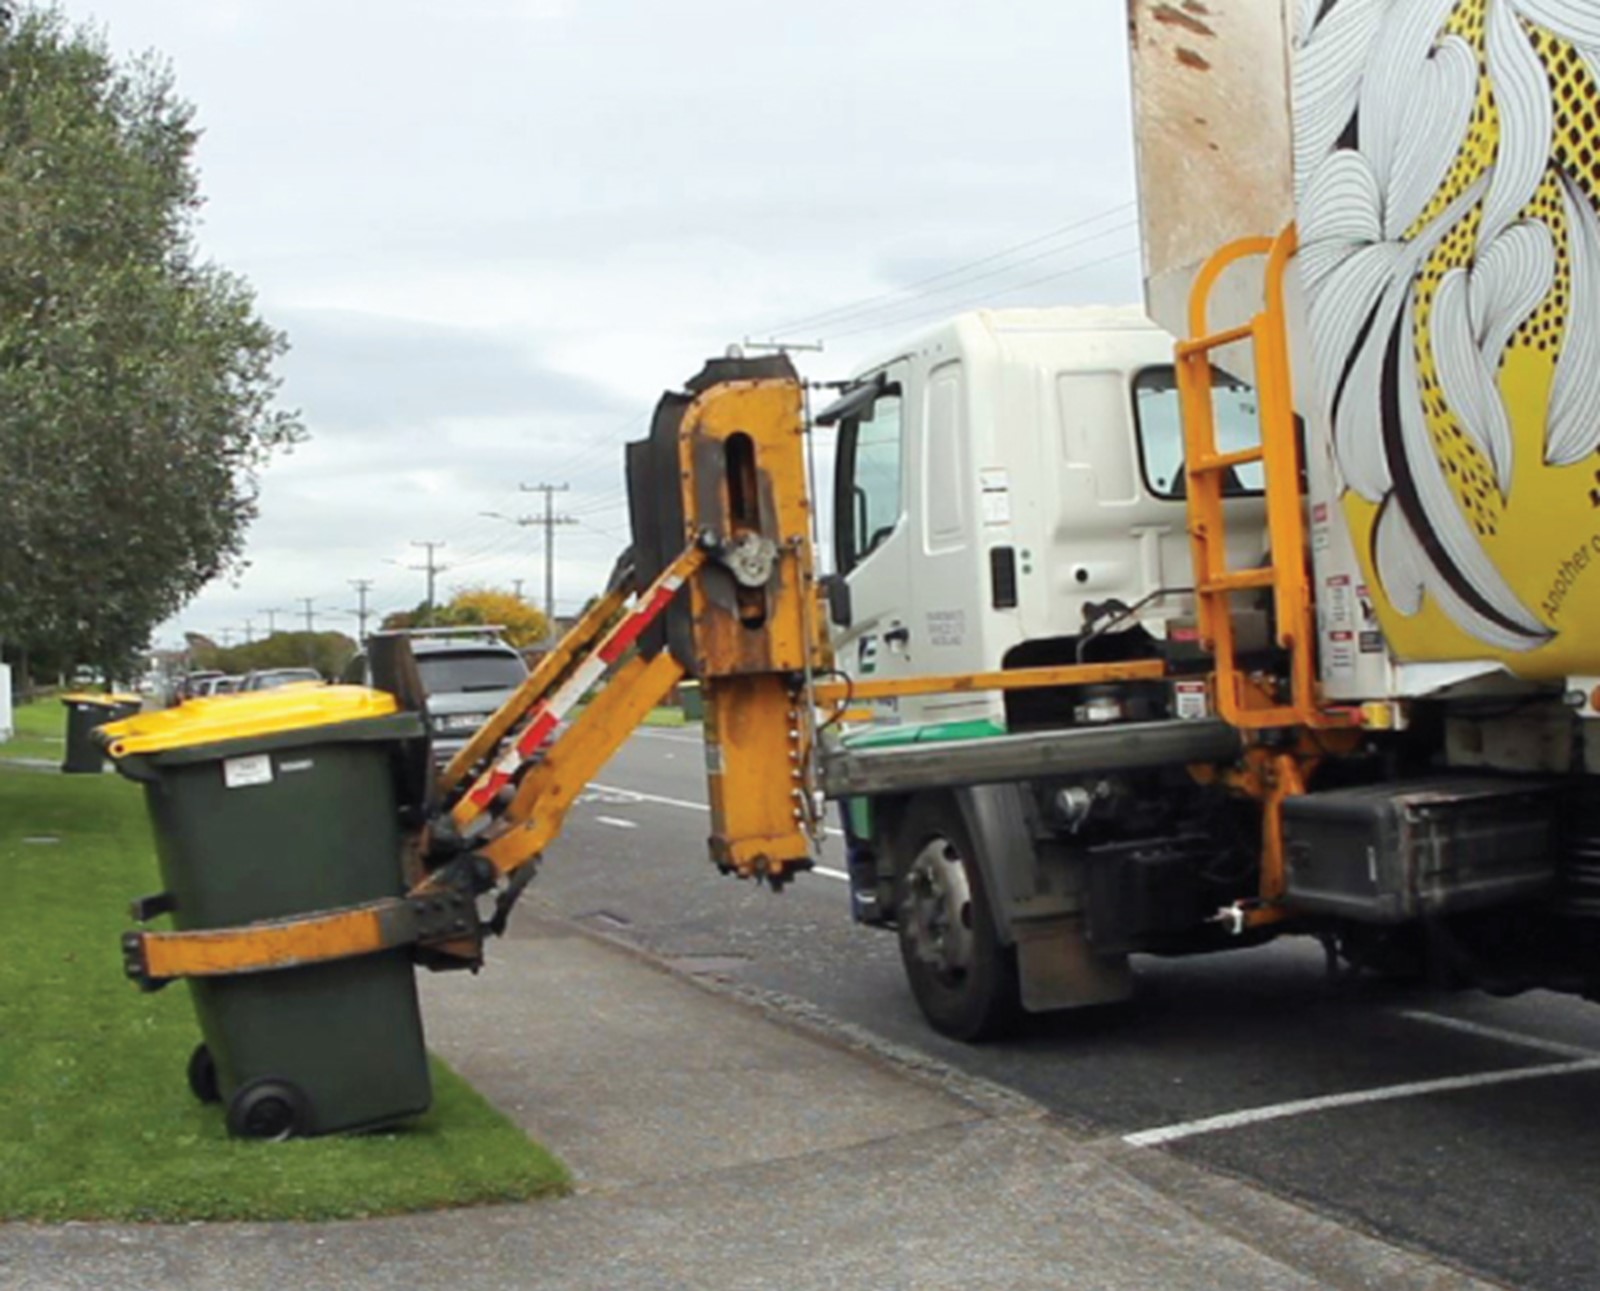 Rubbish truck picking up yellow bin